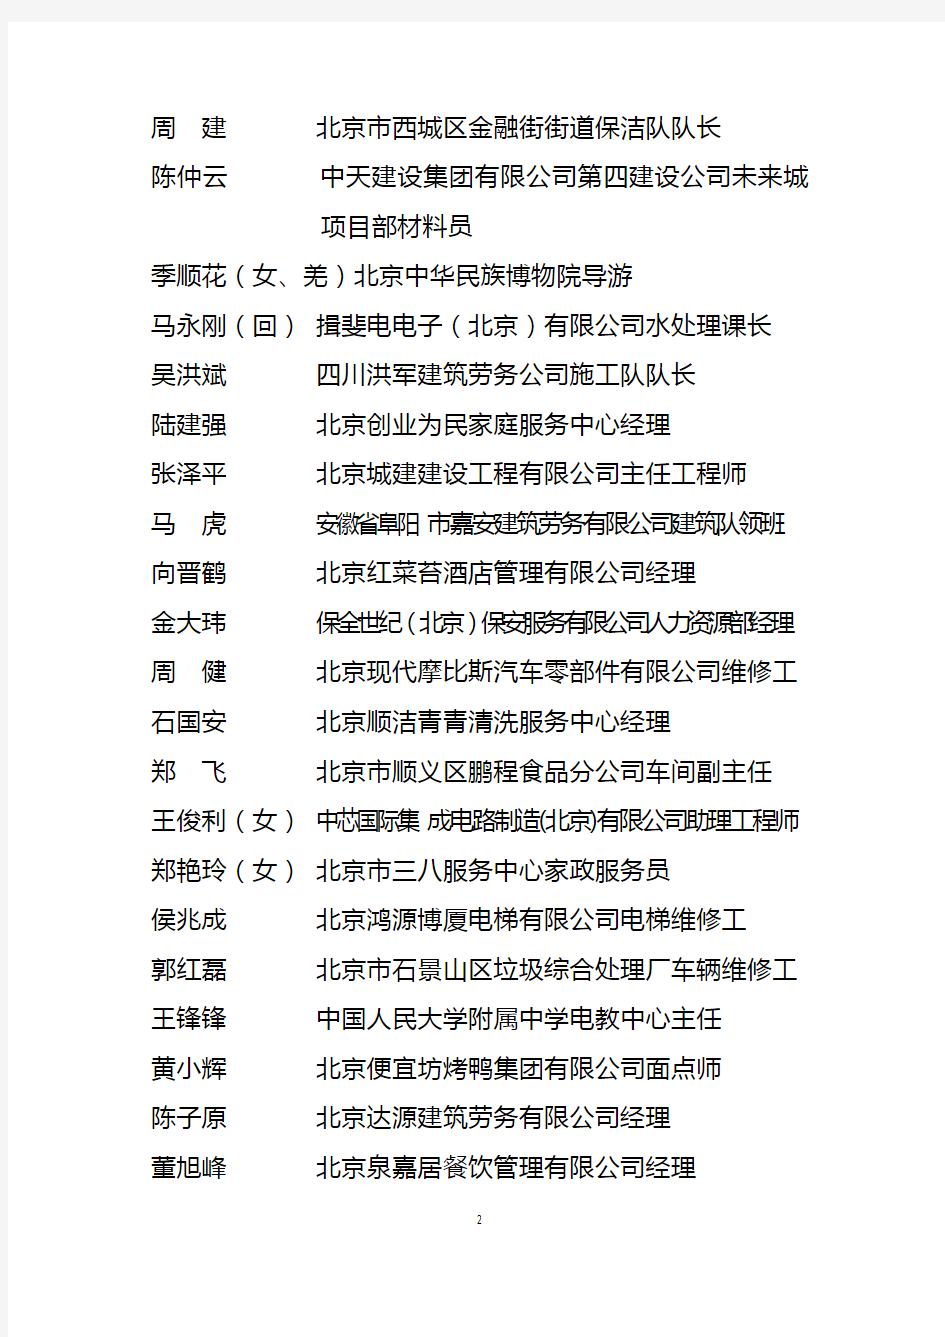 全国优秀农民工名单 - 中华人民共和国人力资源和社会保障部